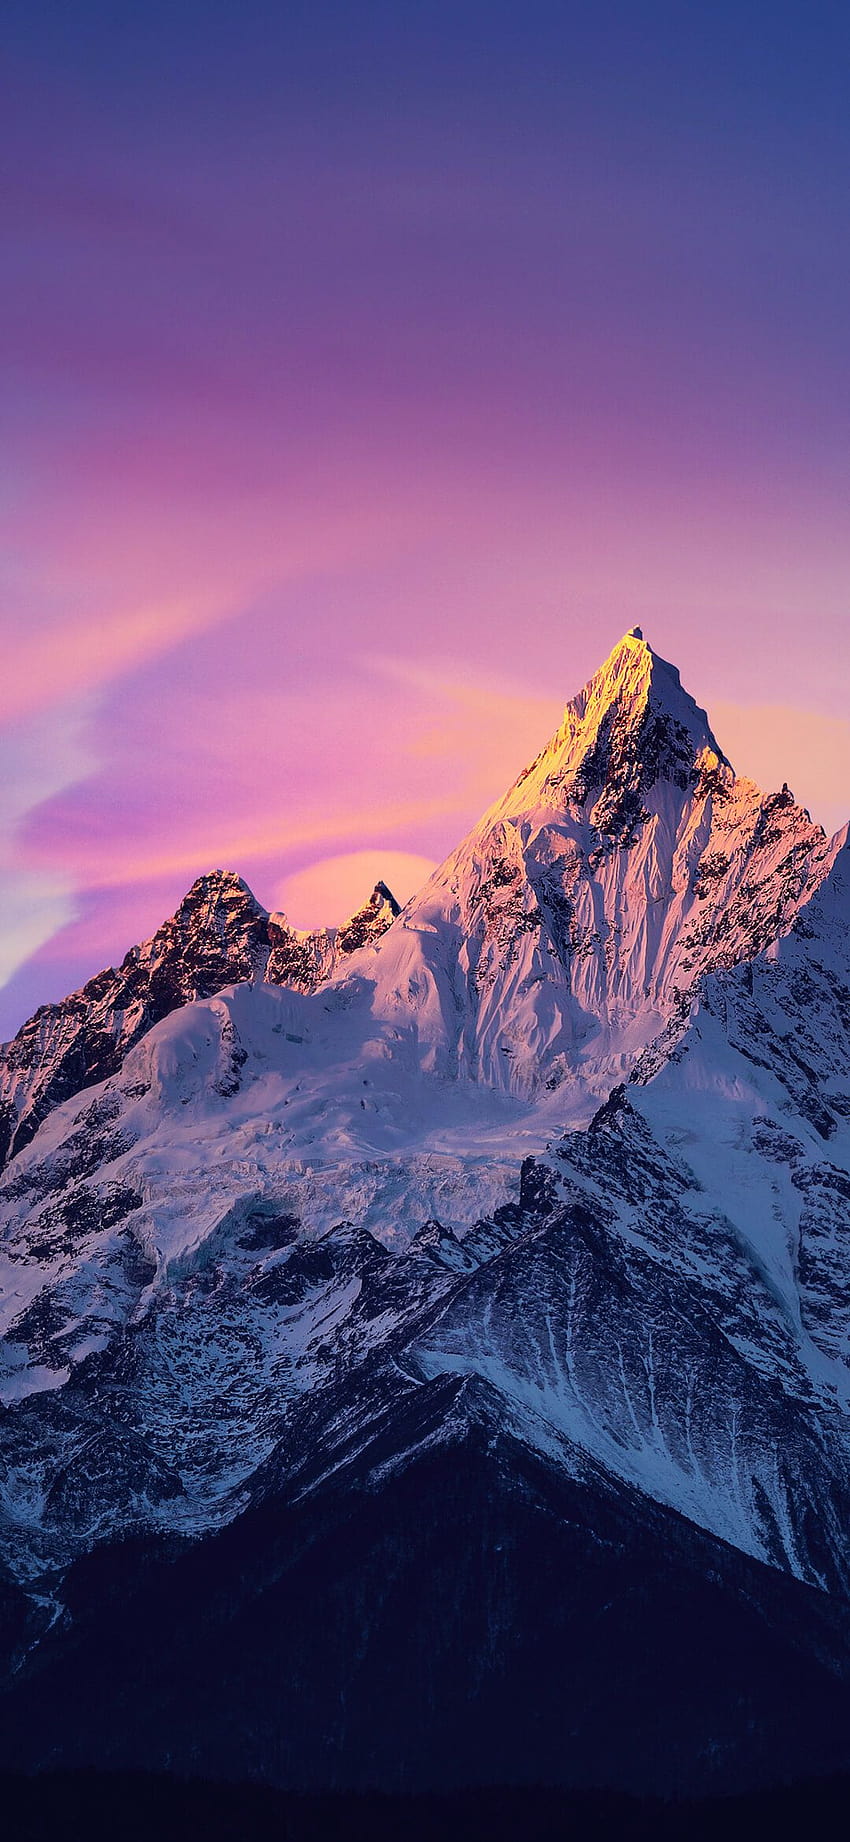 Hãy chiêm ngưỡng bức ảnh nền iPhone với đường nét sơn thủy hữu tình giữa những ngọn núi hùng vĩ. Hình ảnh sẽ đưa bạn khám phá những điều phiêu lưu hưởng thụ thiên nhiên hoang sơ nhất.